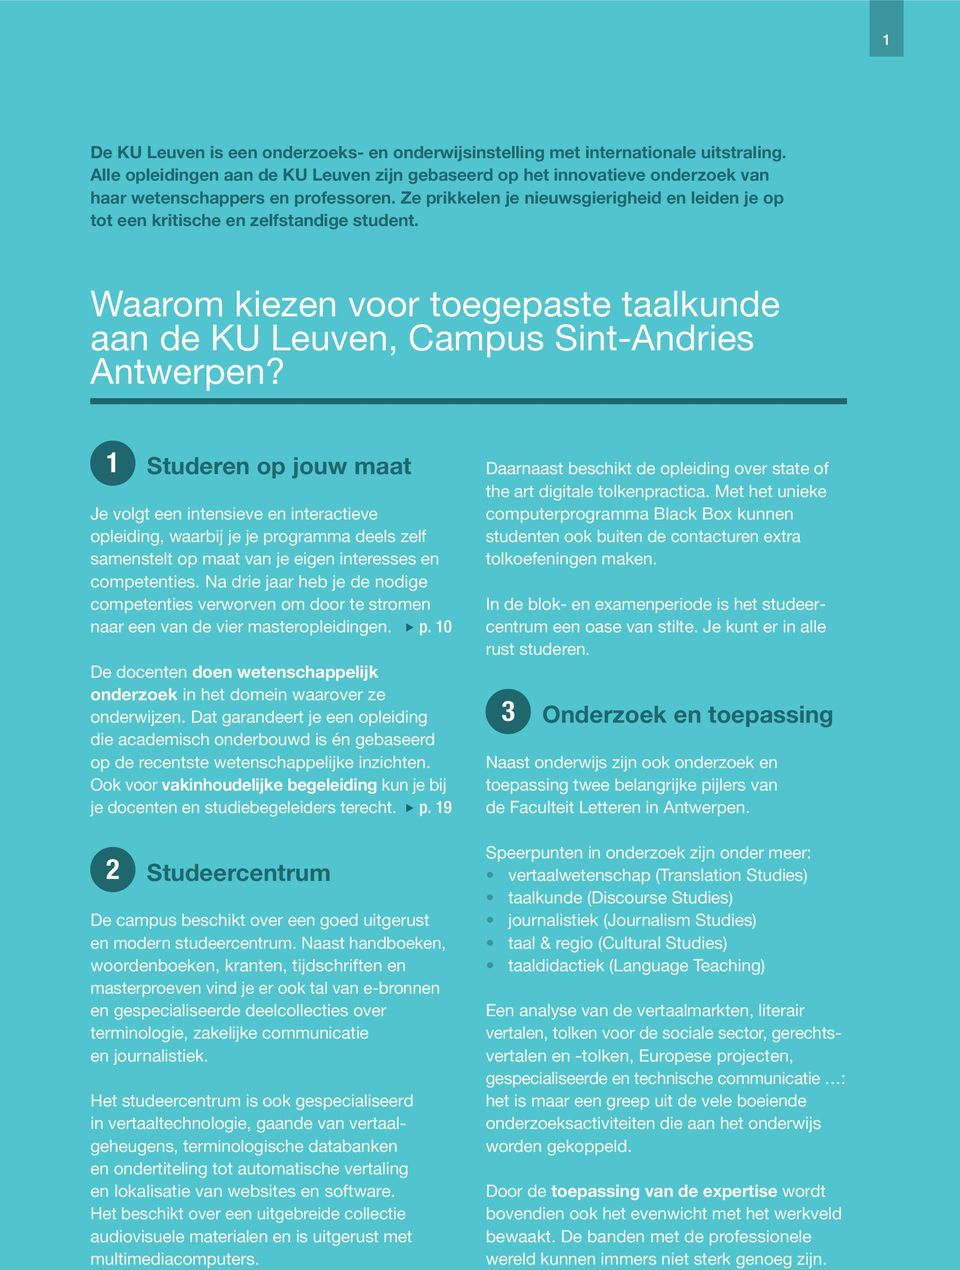 Ze prikkelen je nieuwsgierigheid en leiden je op tot een kritische en zelfstandige student. Waarom kiezen voor toegepaste taalkunde aan de KU Leuven, Campus Sint-Andries Antwerpen?